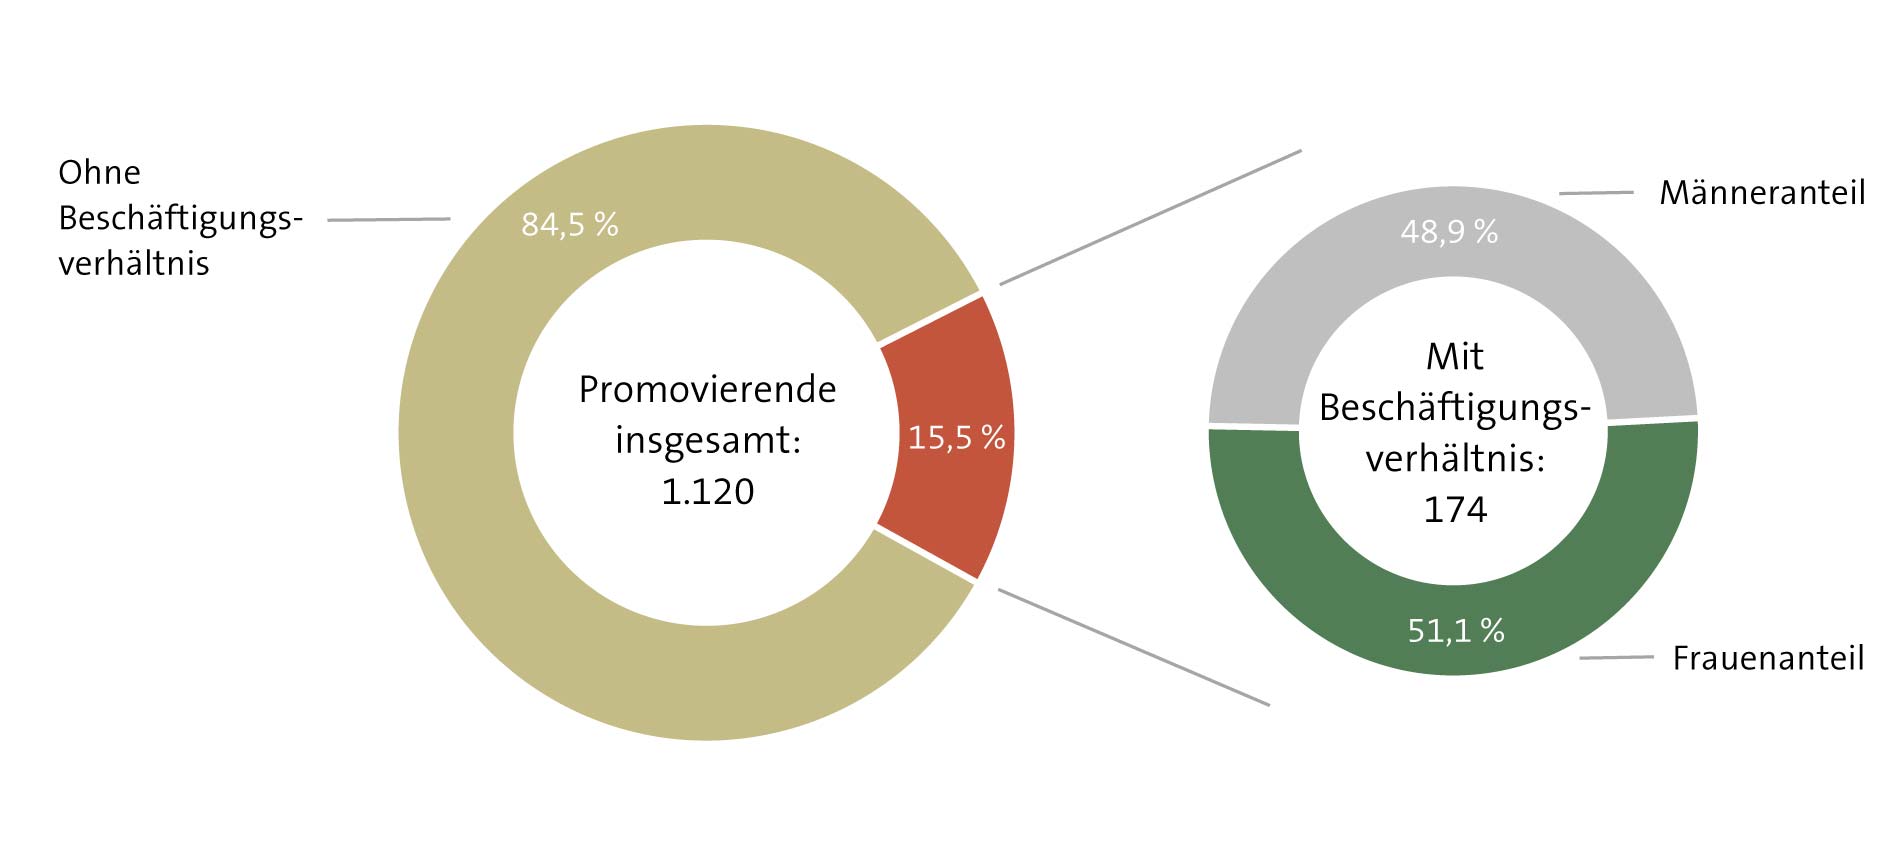 Abbildung: Anteile der Promovierenden mit / ohne Beschäftigungsverhältnis